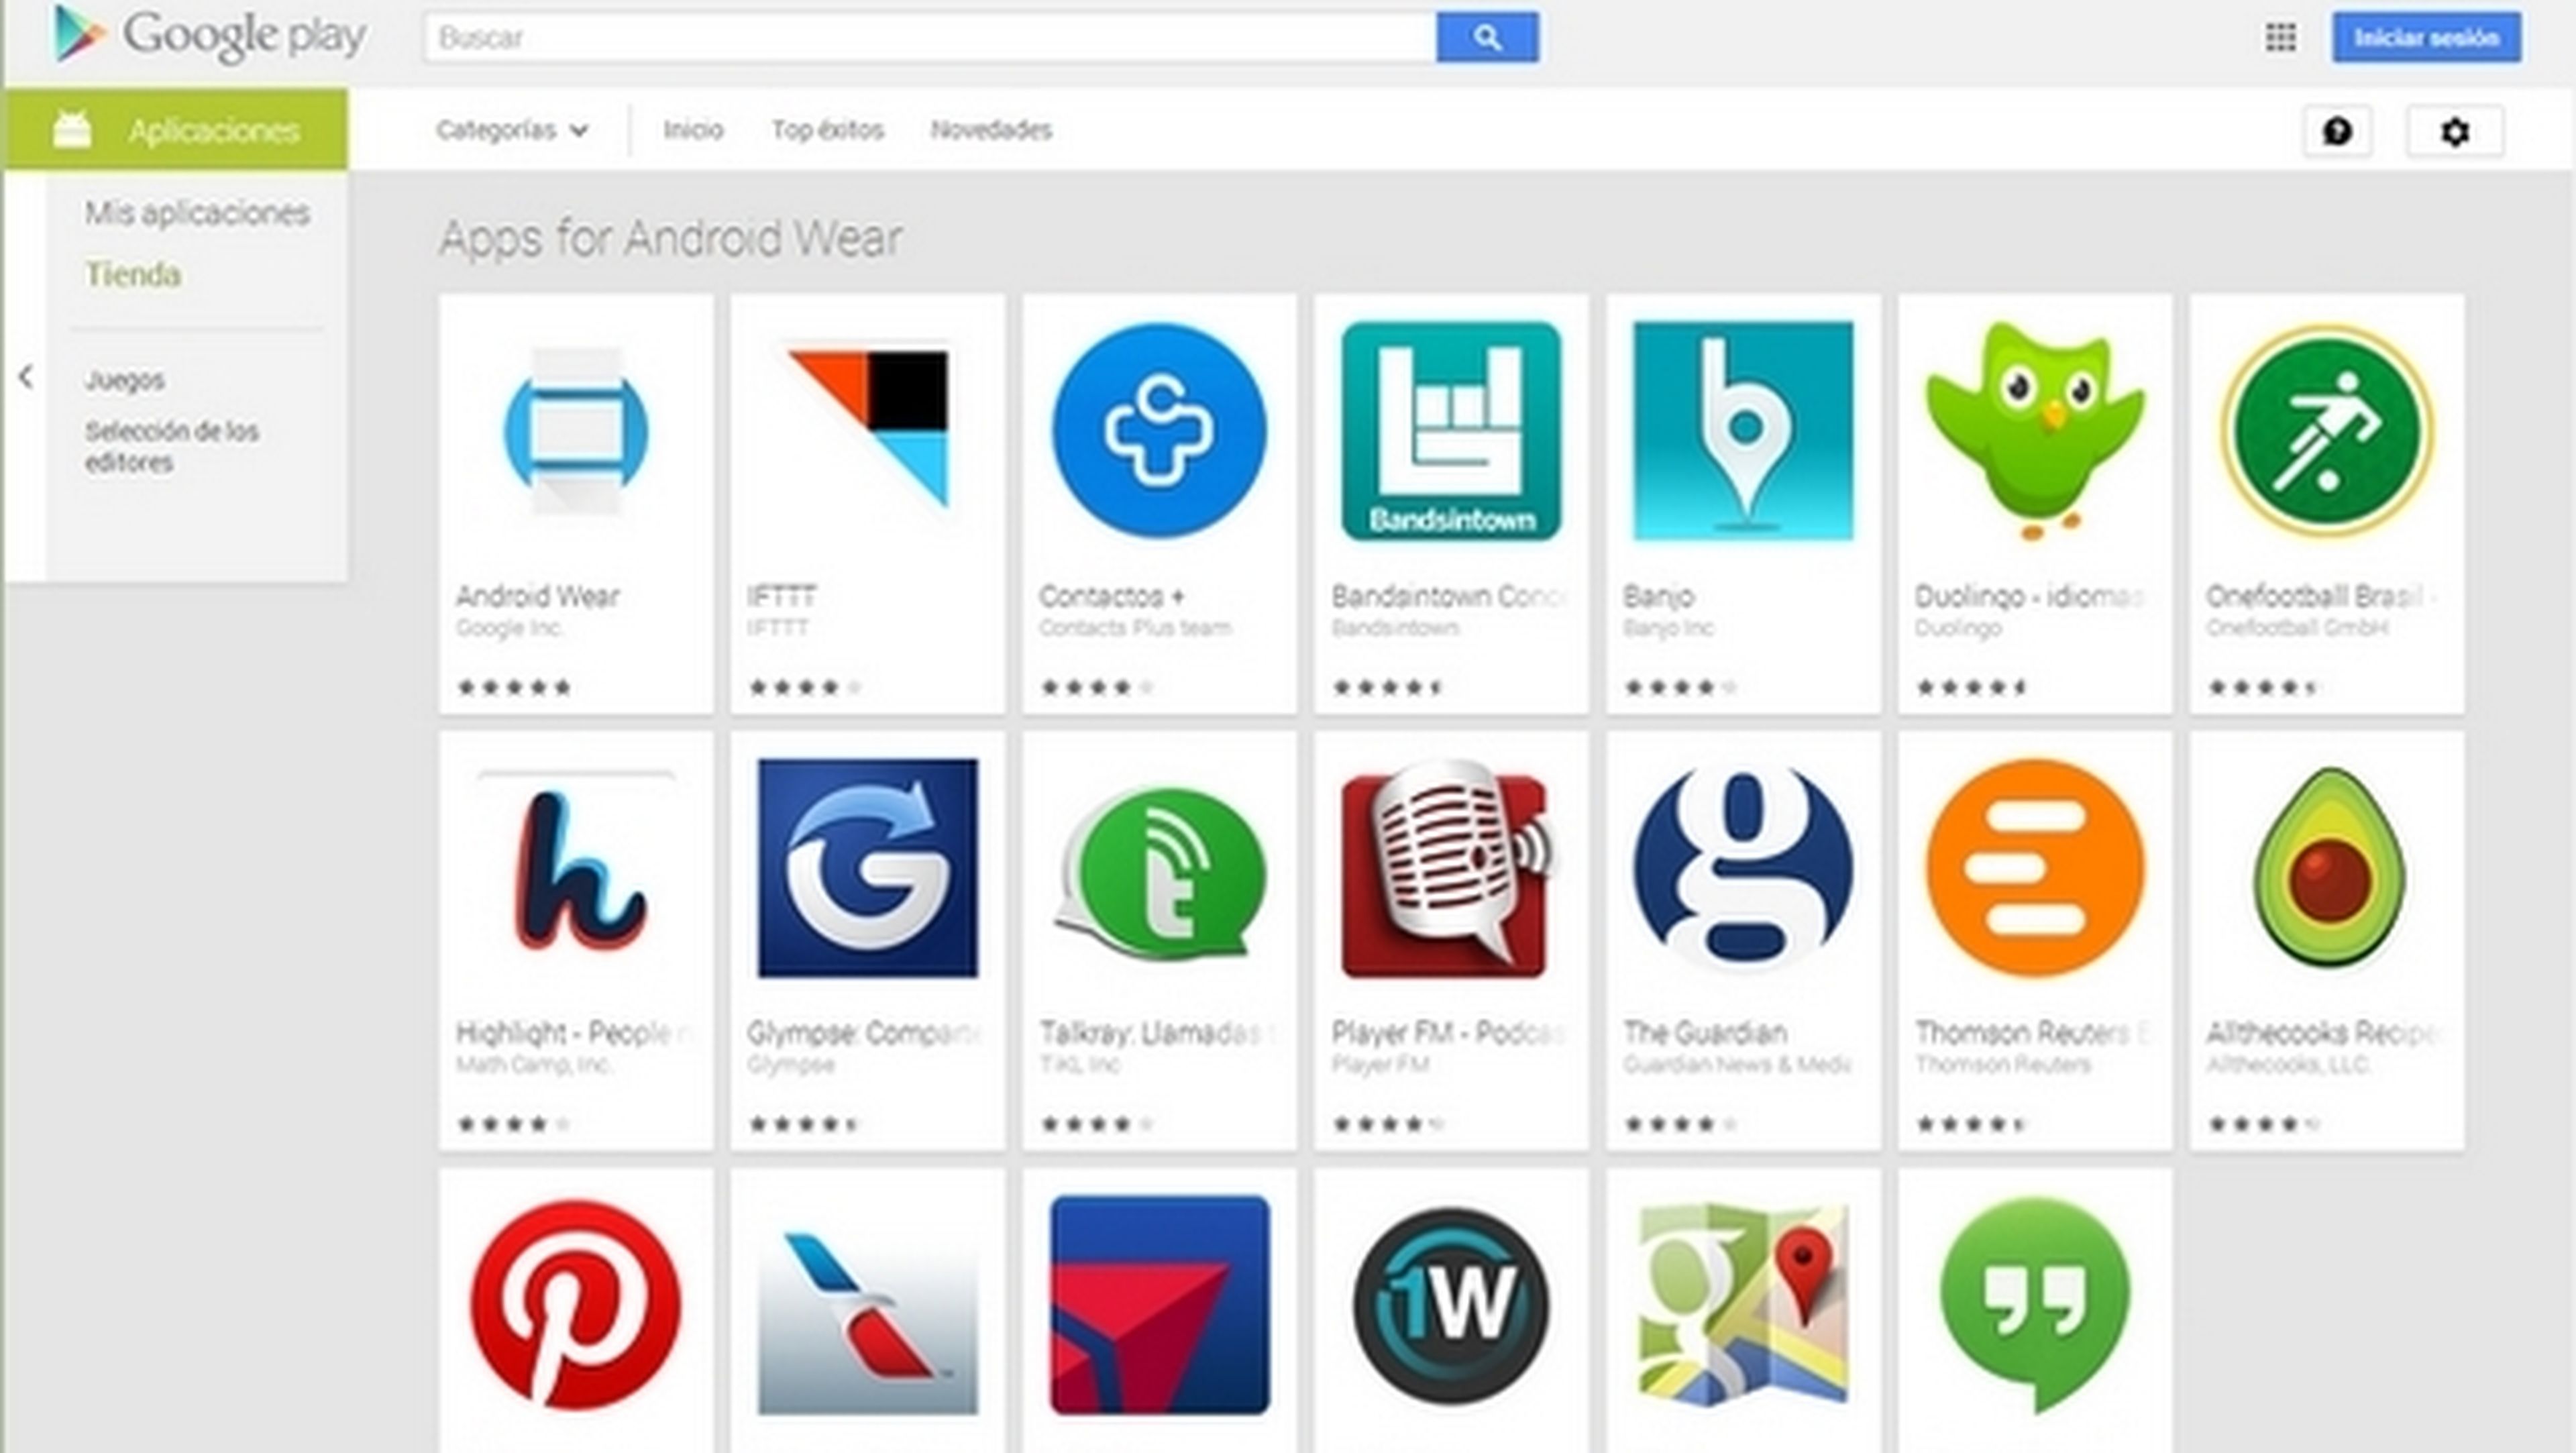 Google estrena la app de Android Wear y abre una sección de apps de Android Wear en Google Play.